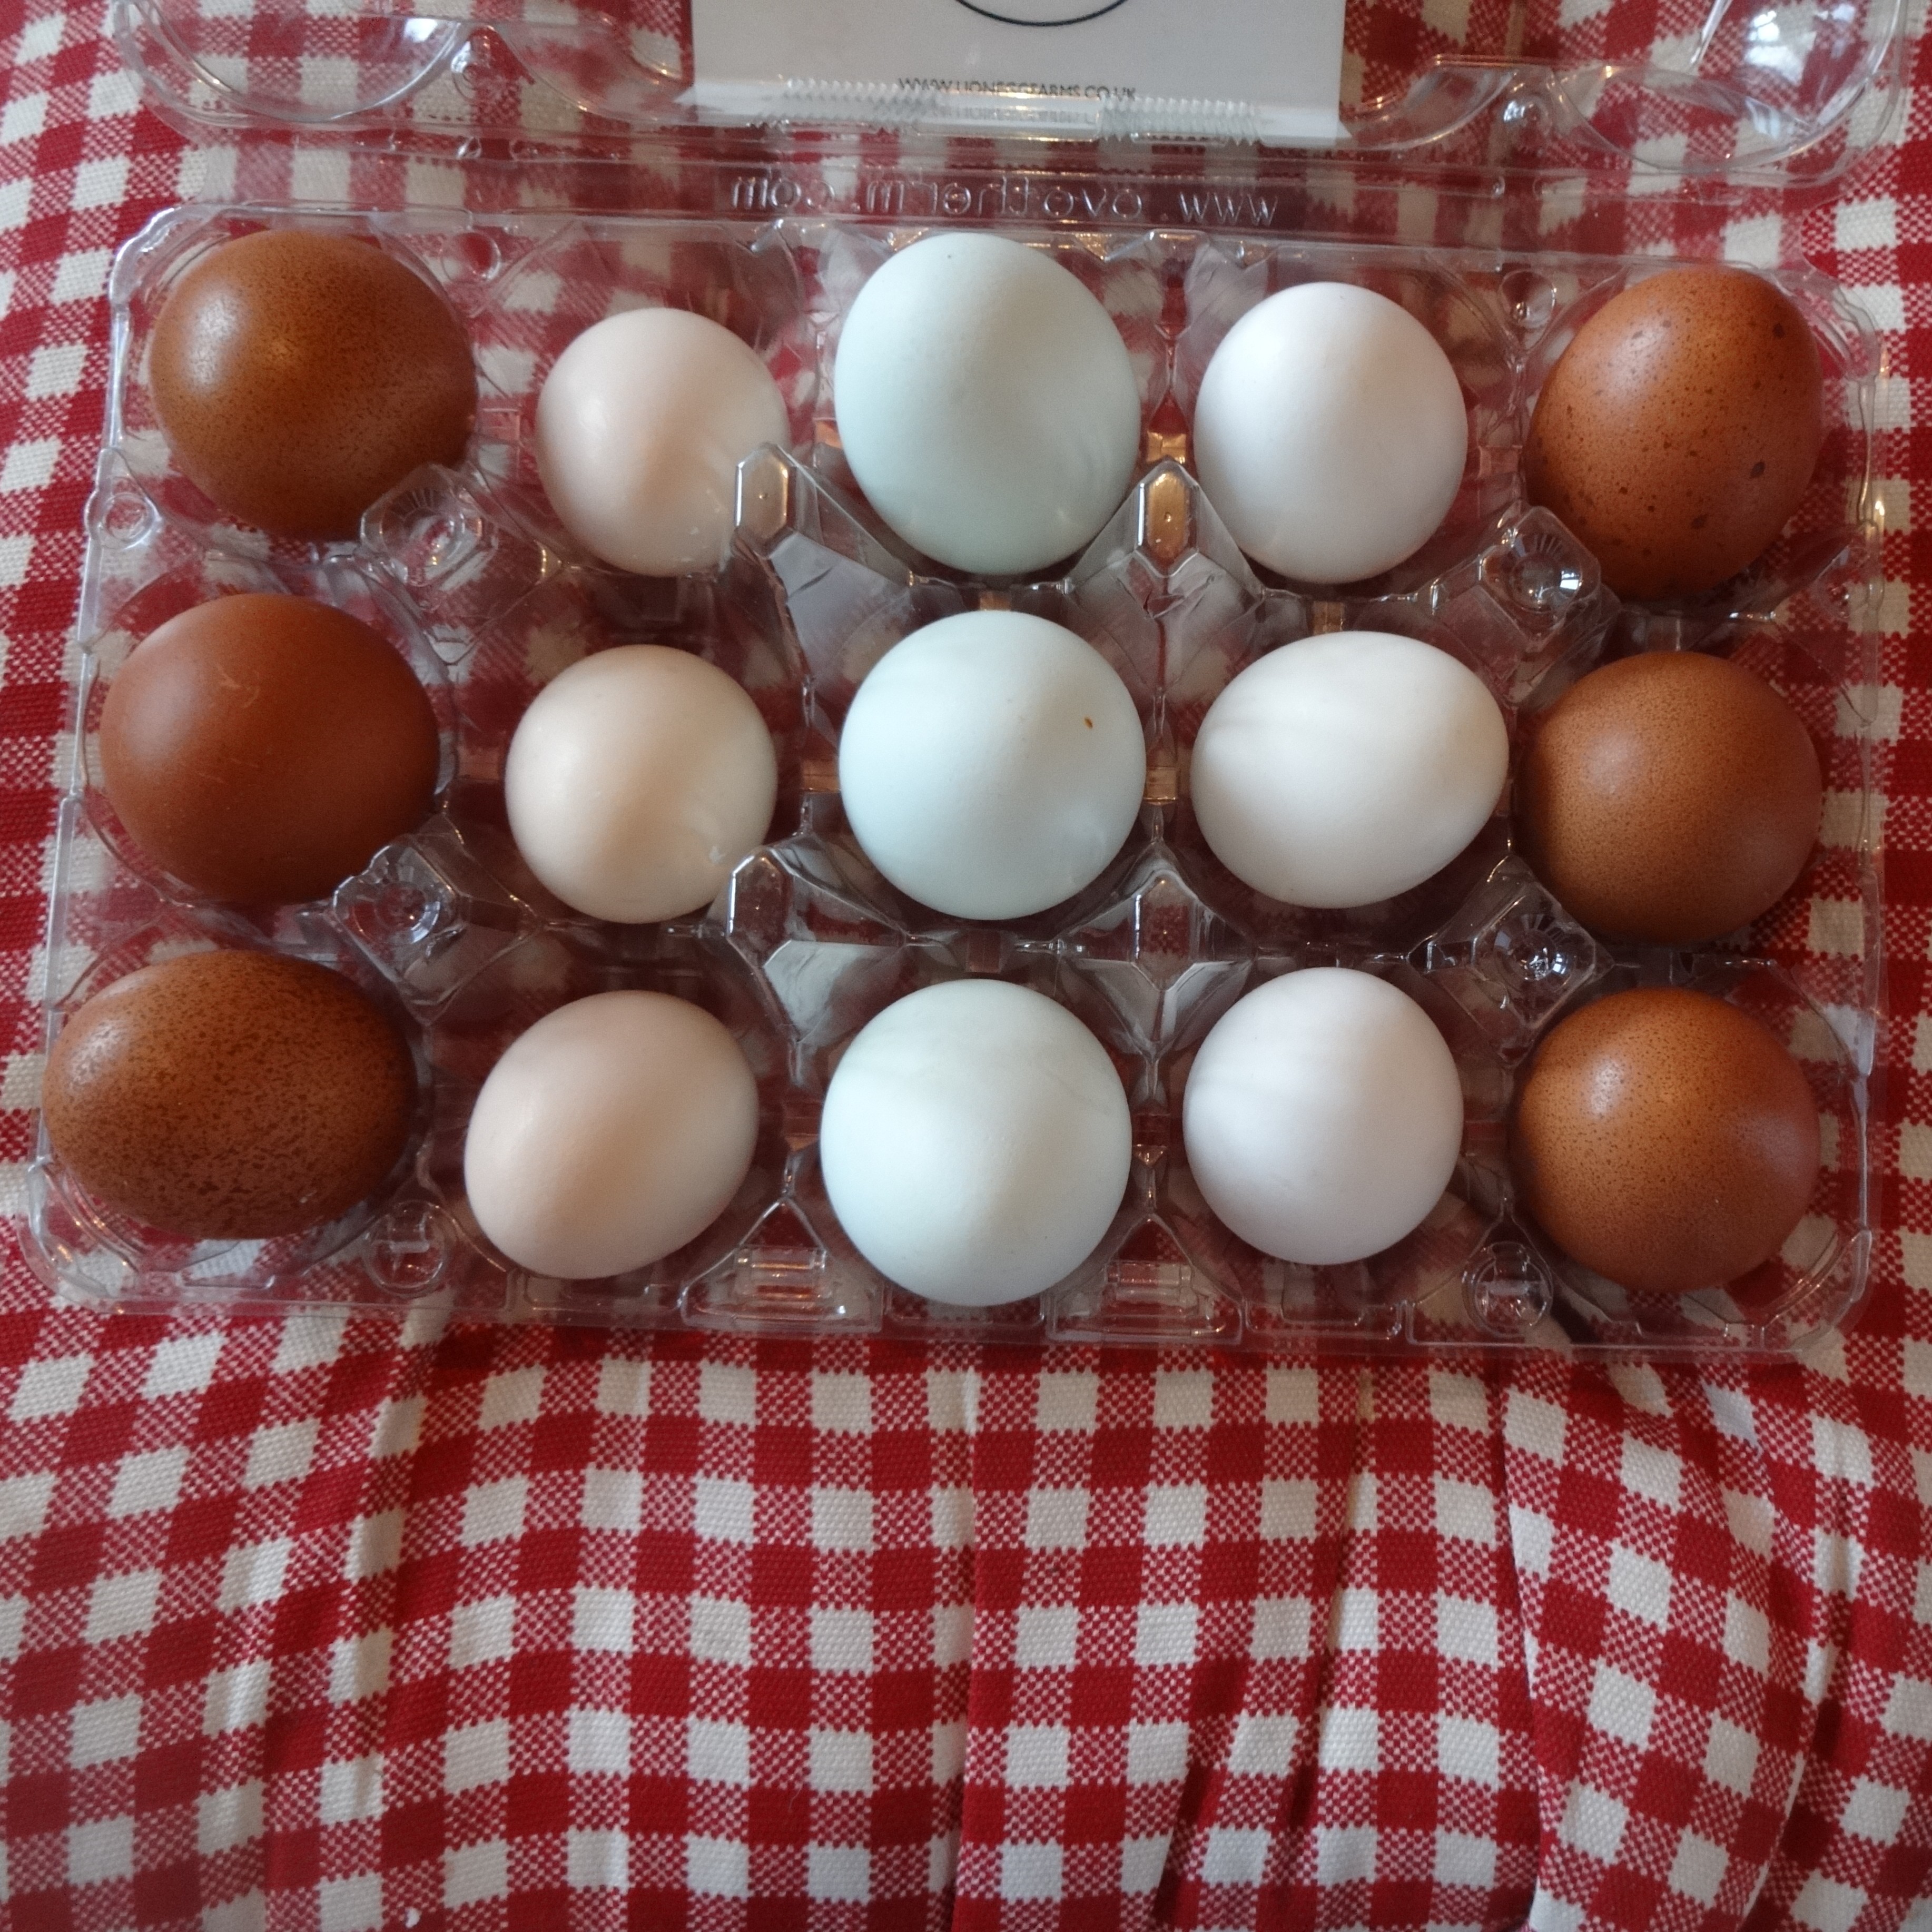 Nikkesha Heaths Sammlung an wundervoll unterschiedlichen, köstlichen Eiern